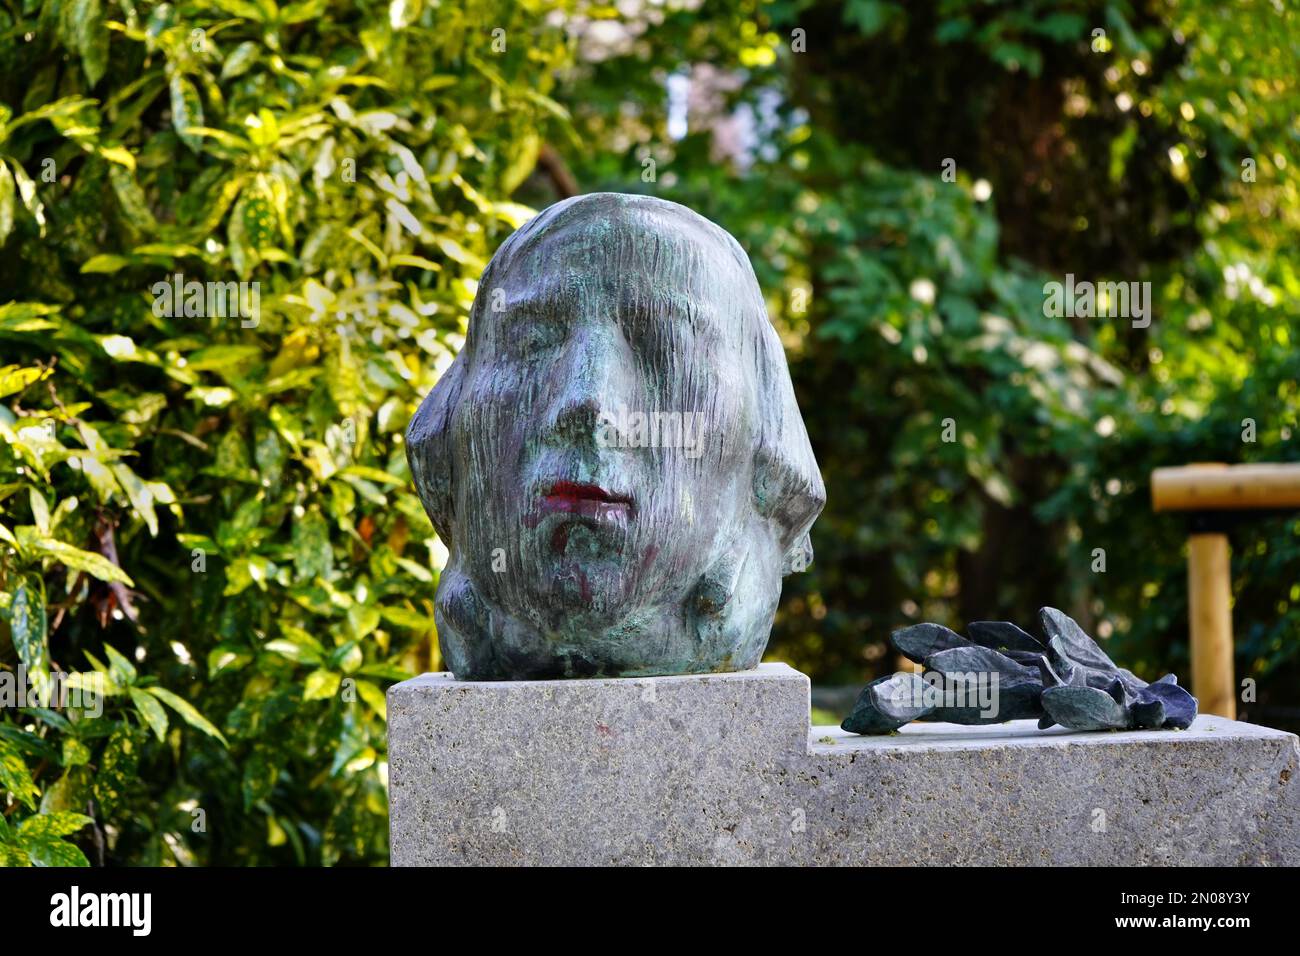 Monument du compositeur allemand Robert Schumann dans le parc public Hofgarten à Düsseldorf/Allemagne, dévoilé en 1956. Sculpteur: Karl Hartung. Banque D'Images